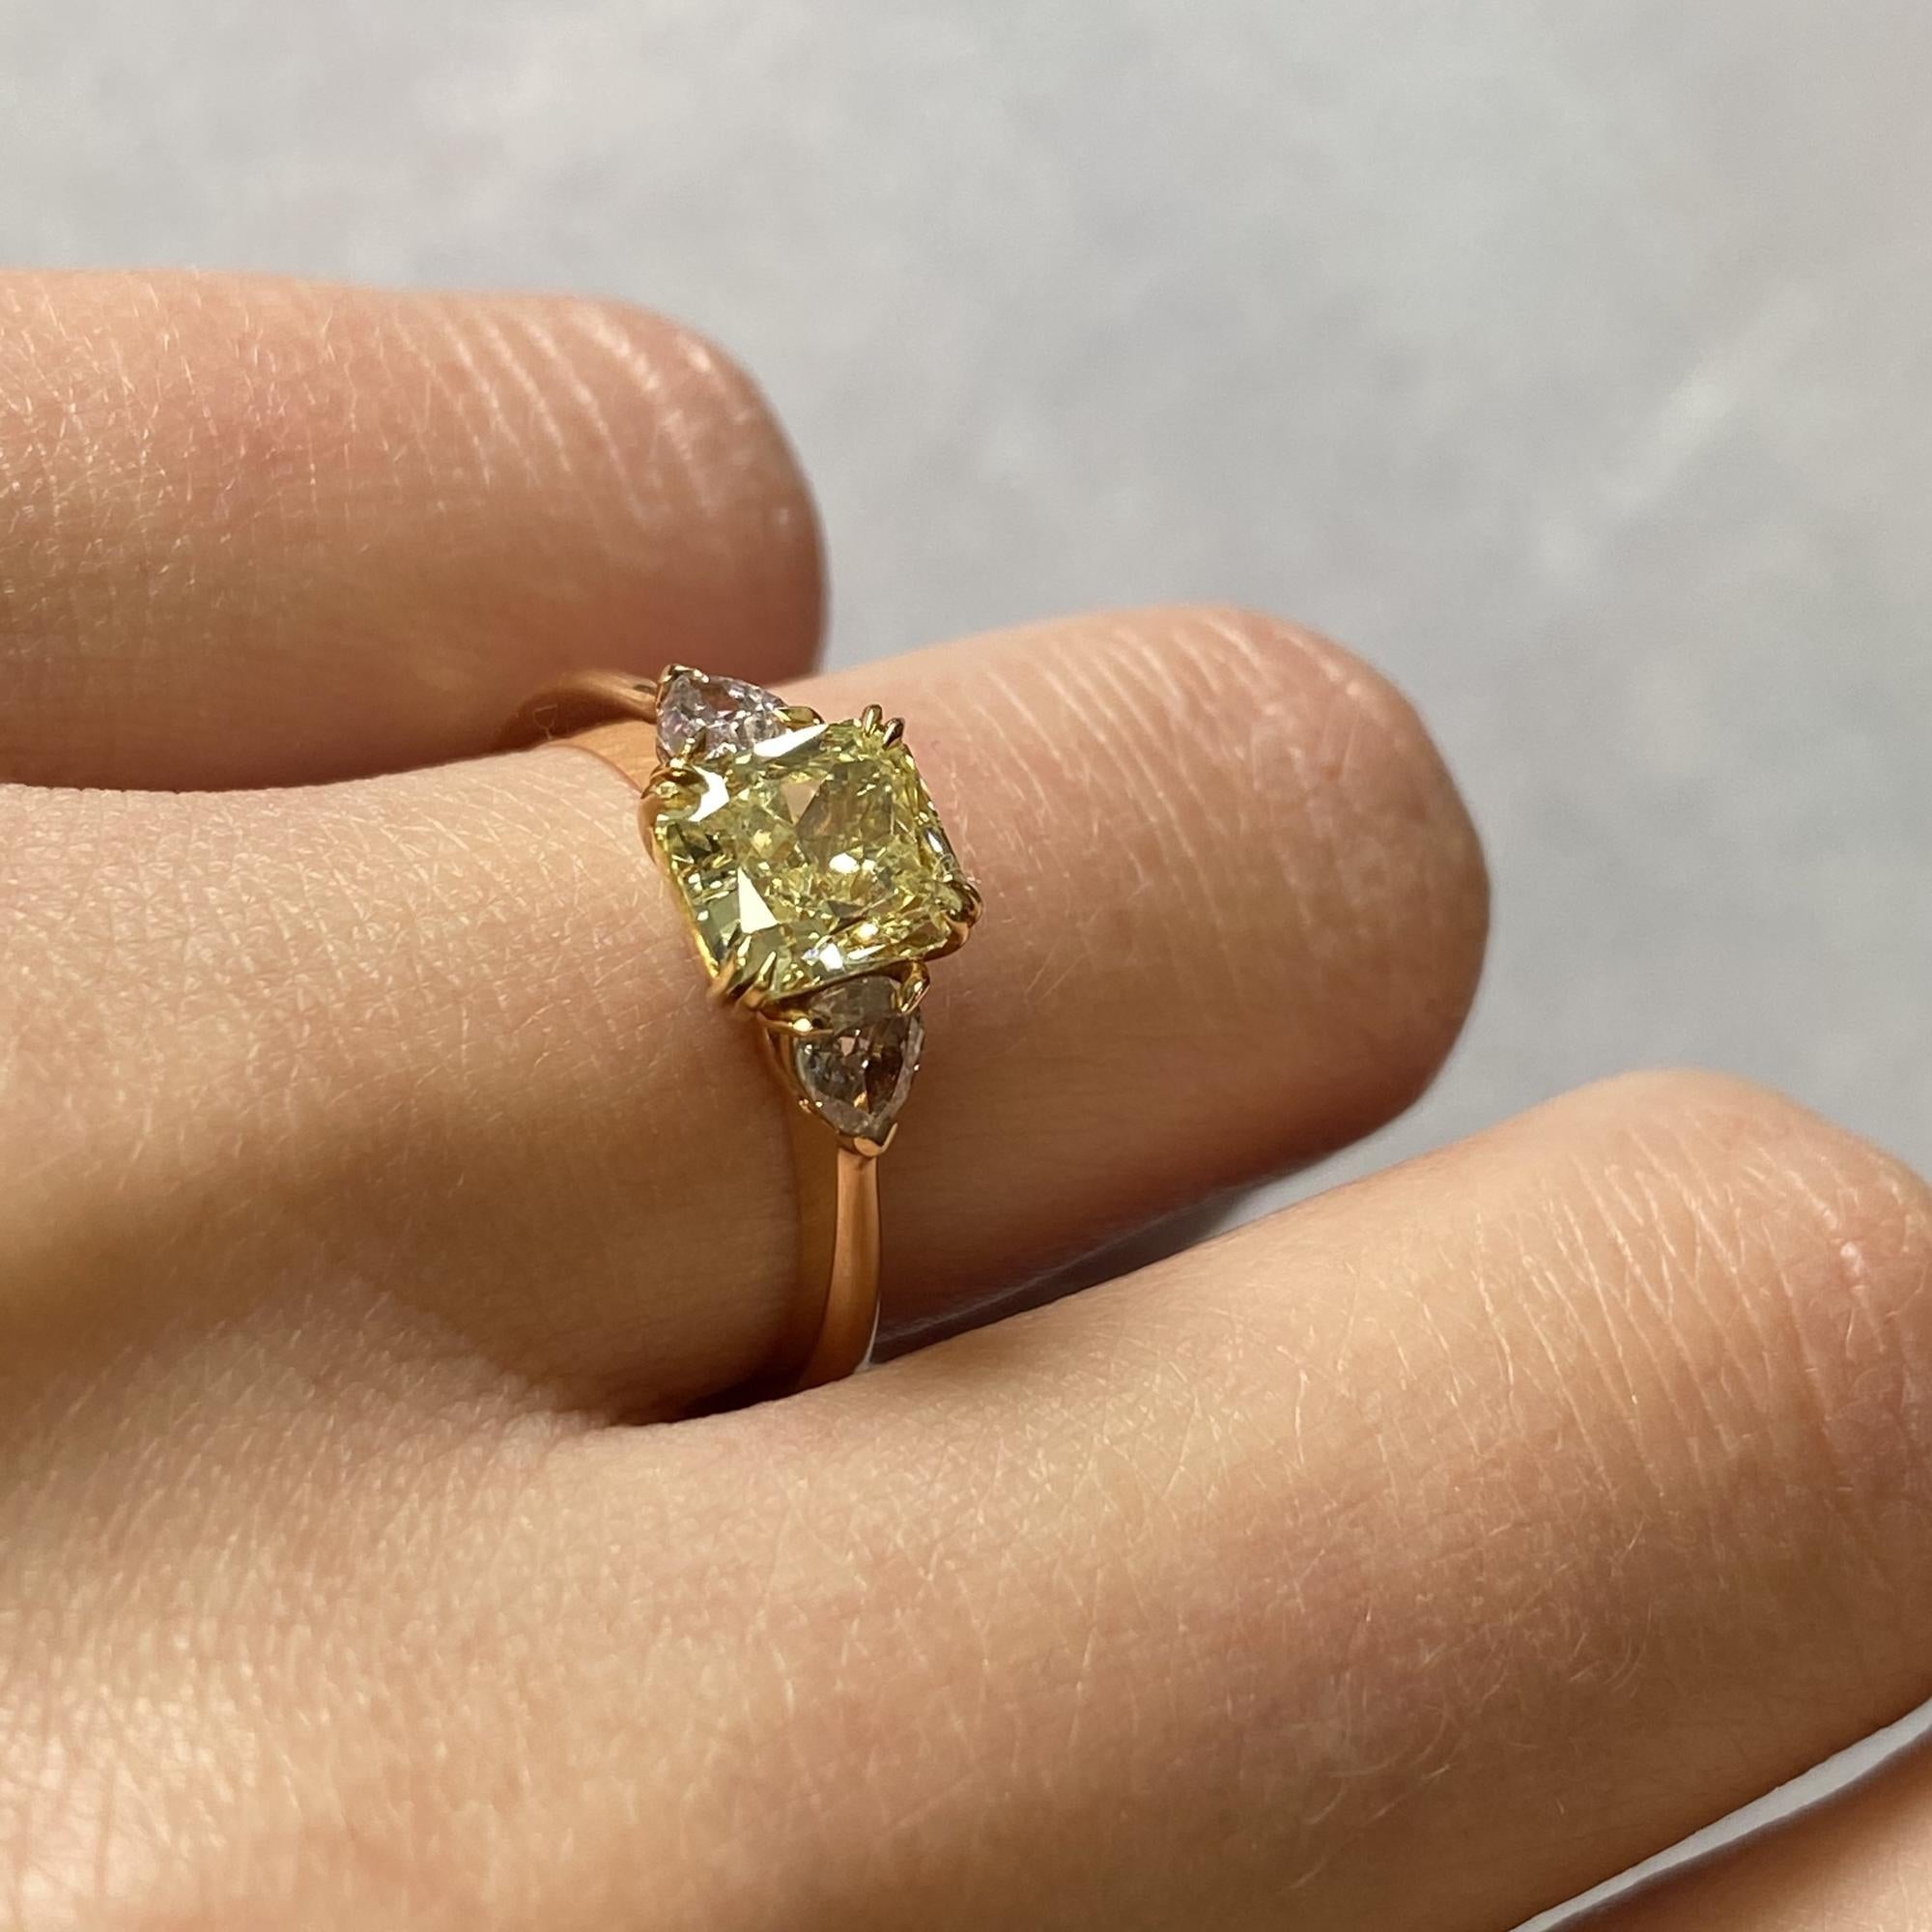 Rachel Koen 18K Yellow Gold Asscher and Pear Shaped Three-Stone Ring 1.37 Carat 1